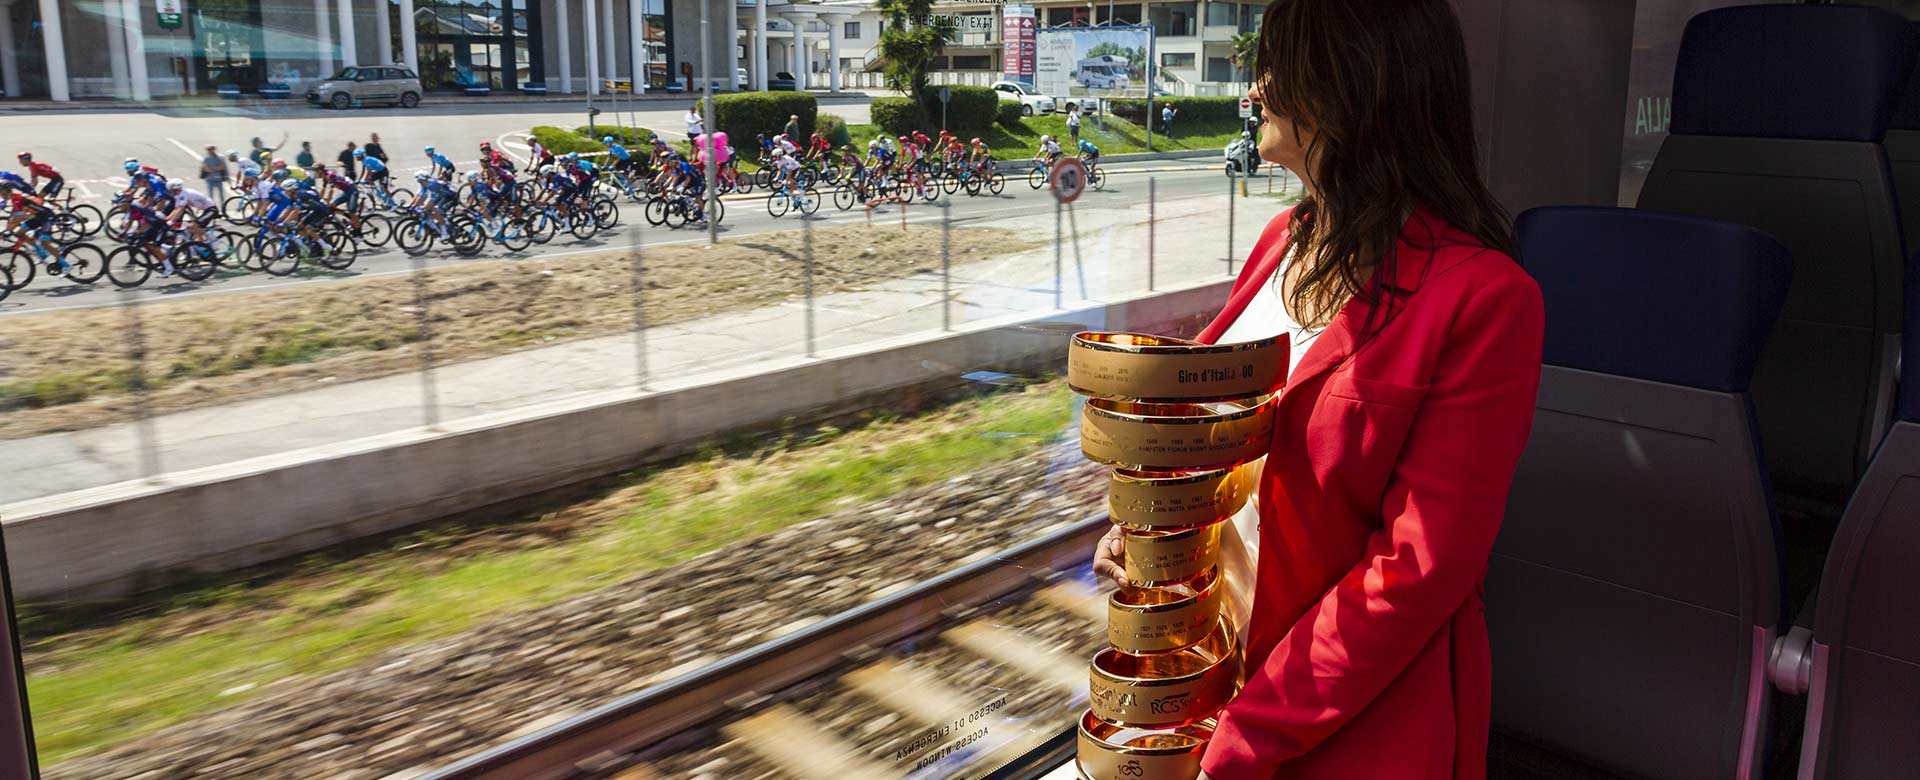 Il treno Pop affianca i ciclisti del Giro d'Italia